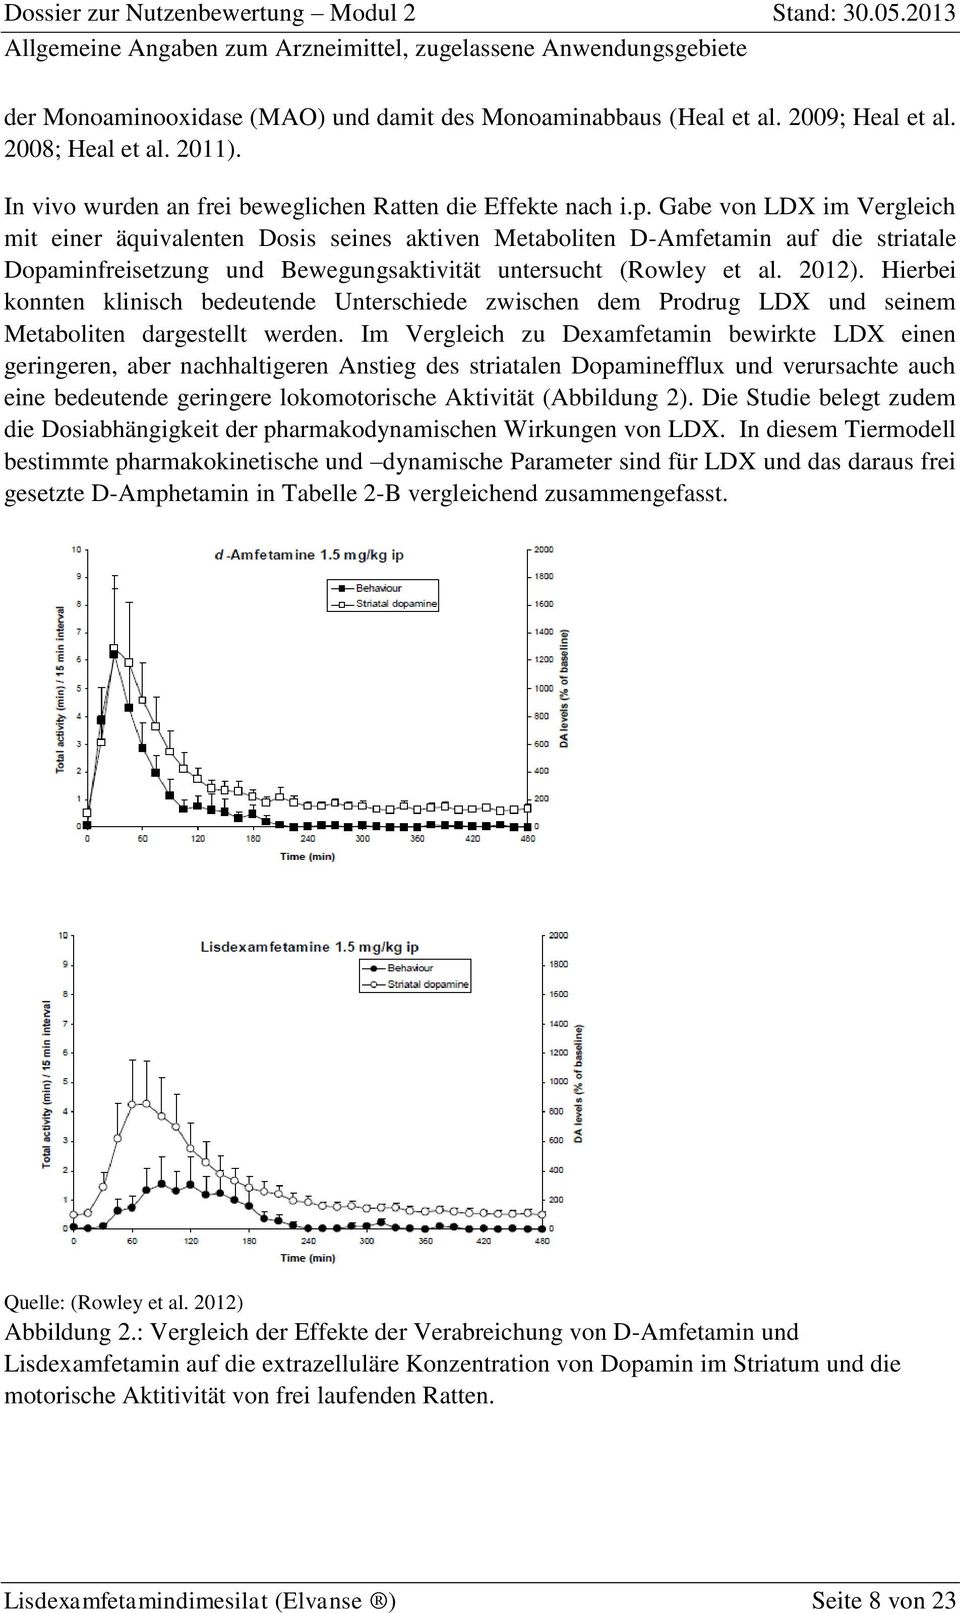 Hierbei konnten klinisch bedeutende Unterschiede zwischen dem Prodrug LDX und seinem Metaboliten dargestellt werden.